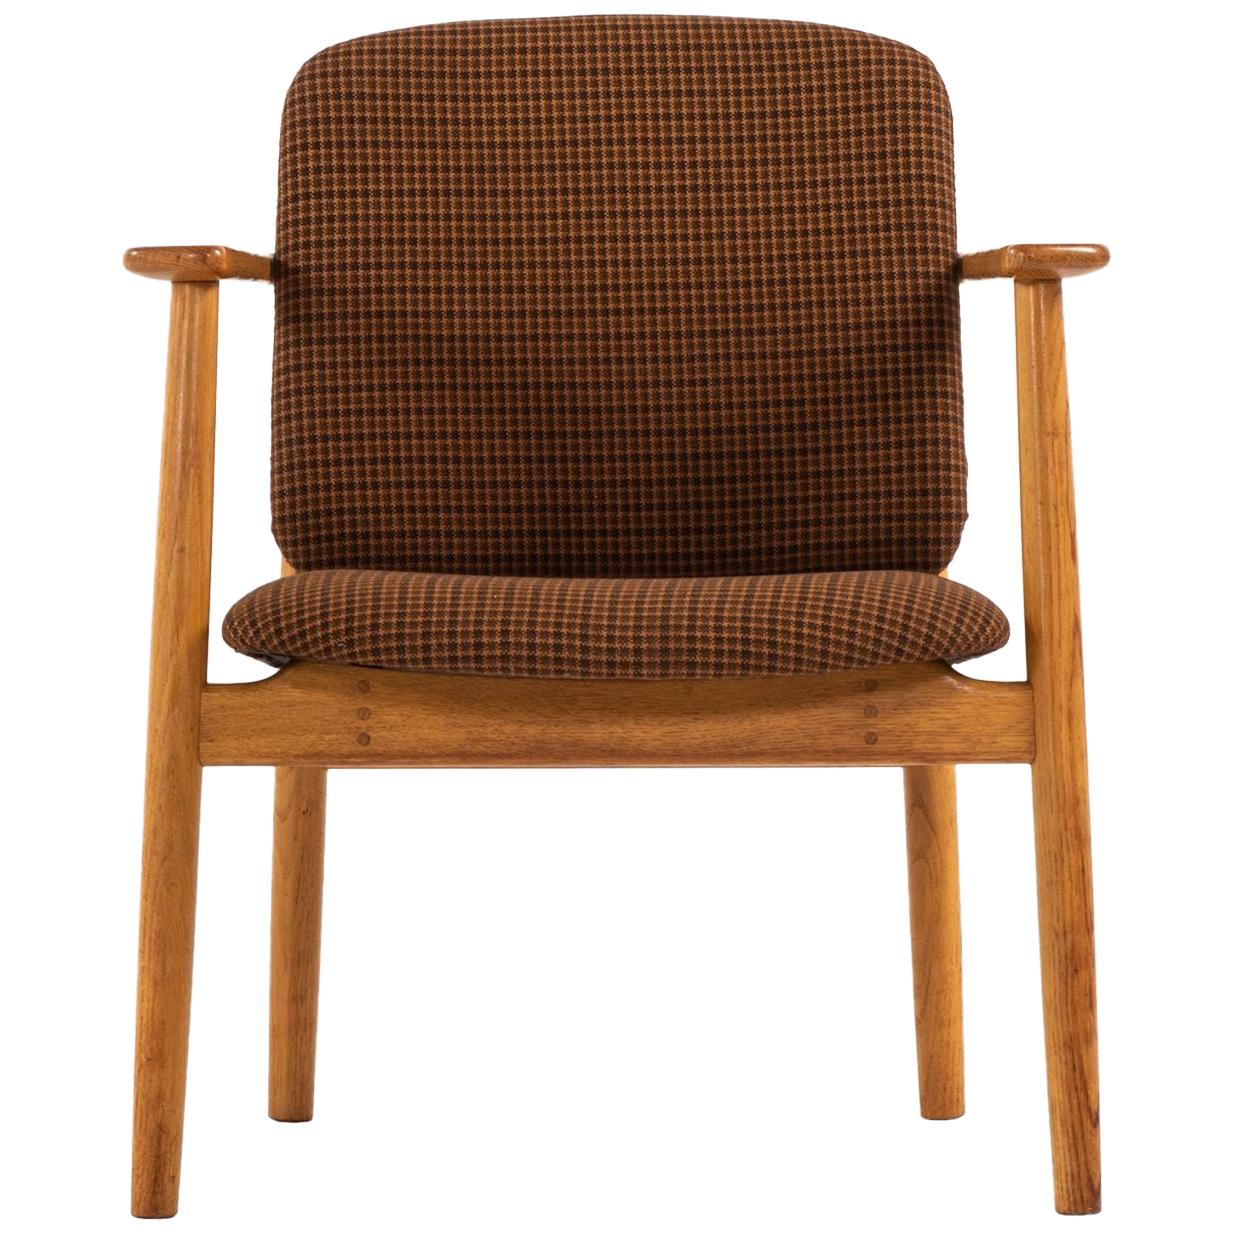 Sessel "Gr. Mogensen" von Sborg Mbelfabrik in Dänemark, hergestellt